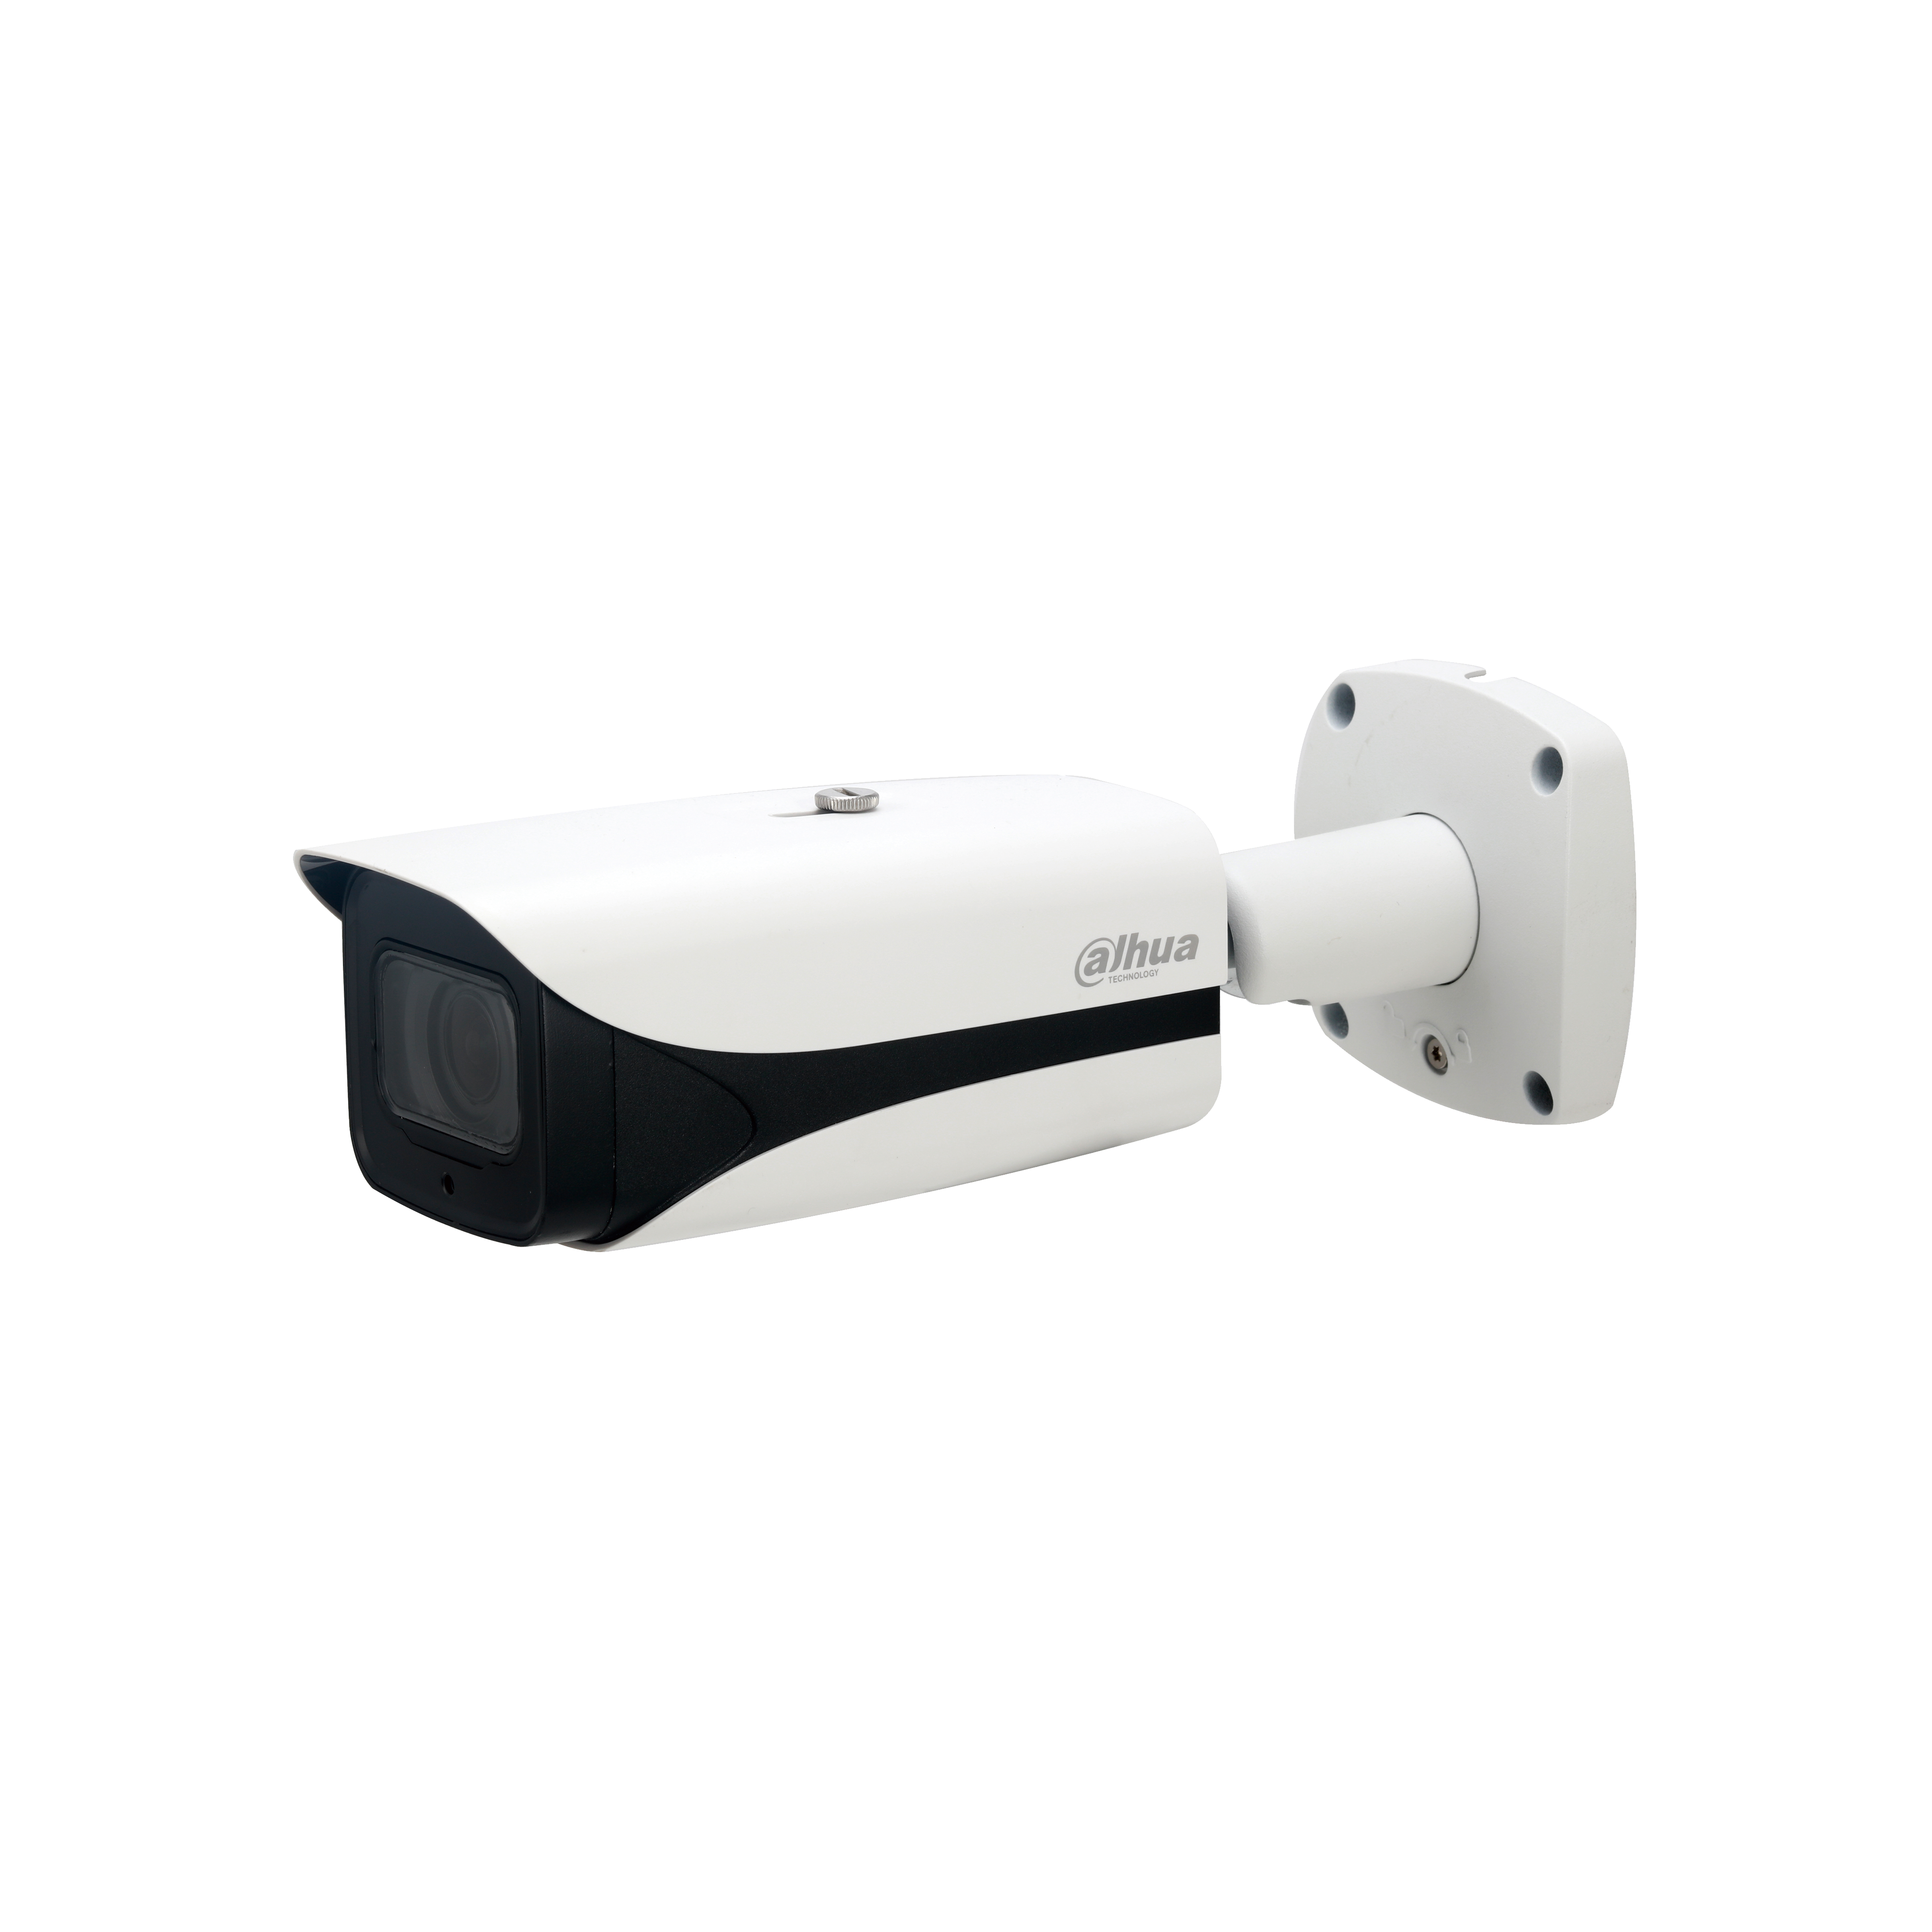 DAHUA IPC-HFW8241E-Z5 2MP IR AI Bullet Network Camera